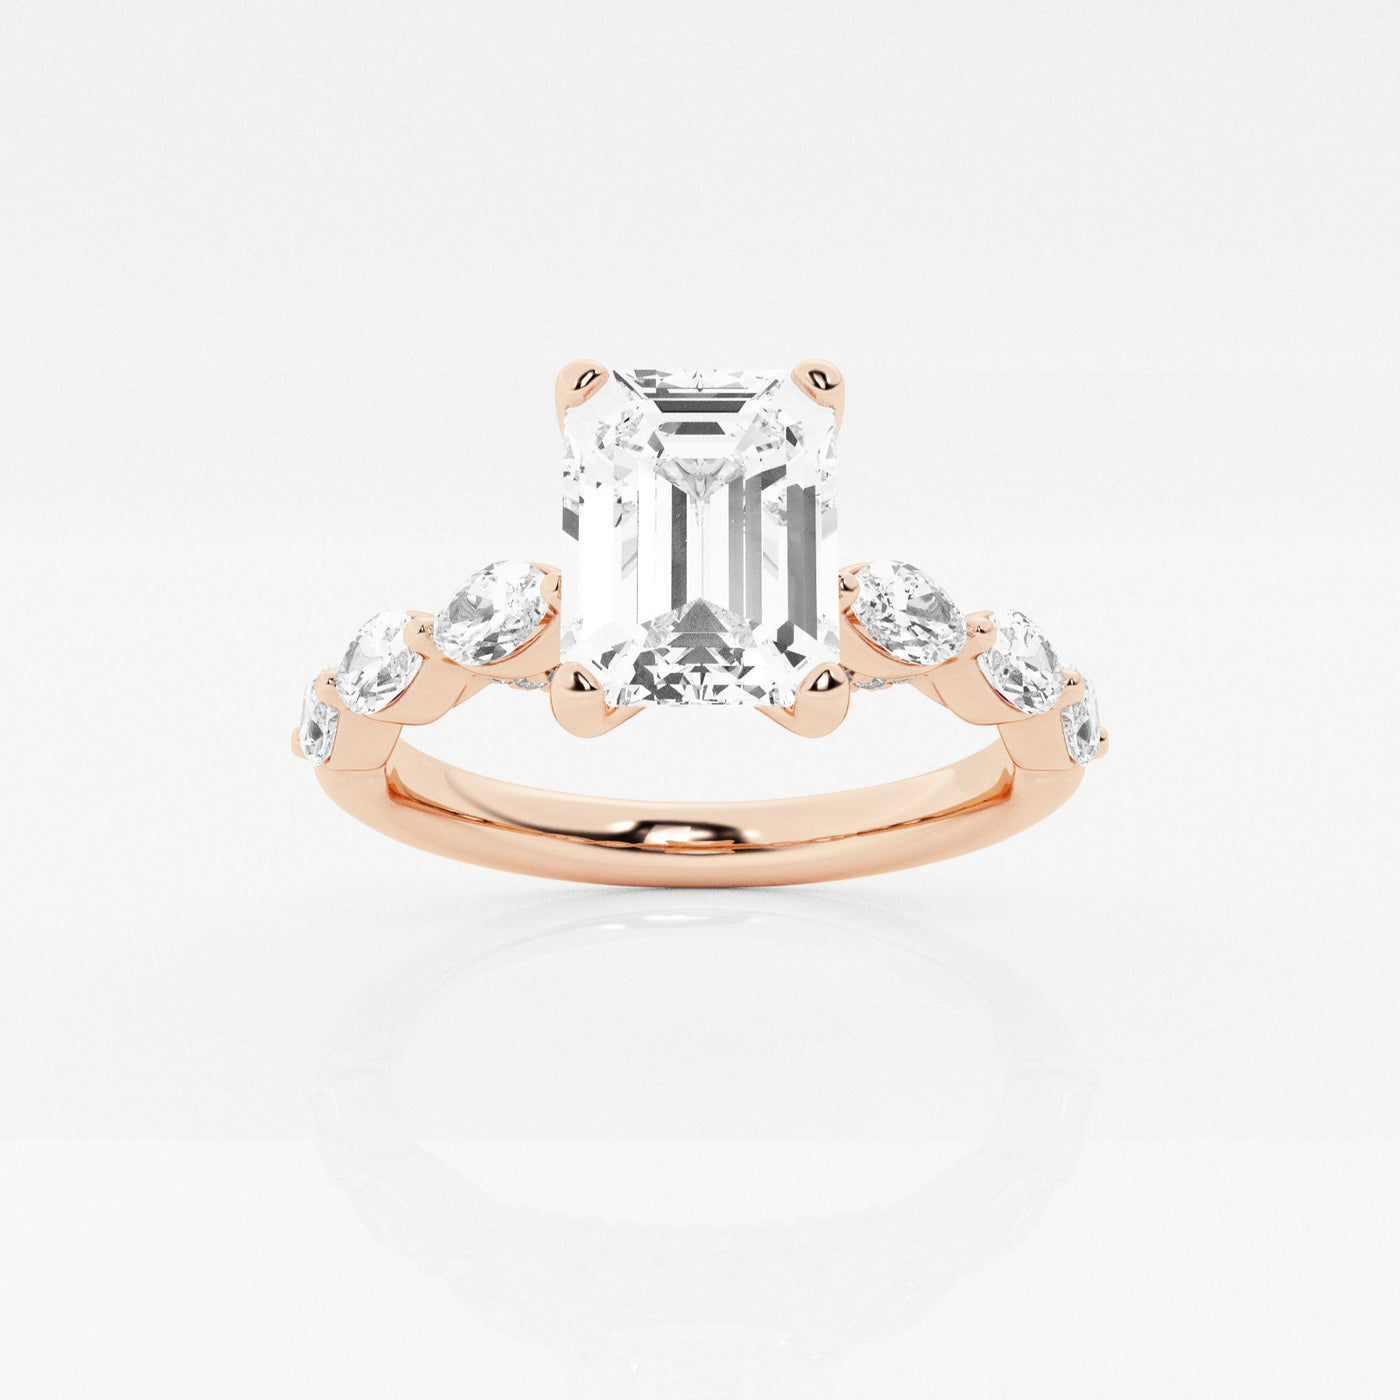 _main_image@SKU:LGR2638X2E150SOGS4~#carat_1.91#diamond-quality_fg,-vs2+#metal_18k-rose-gold